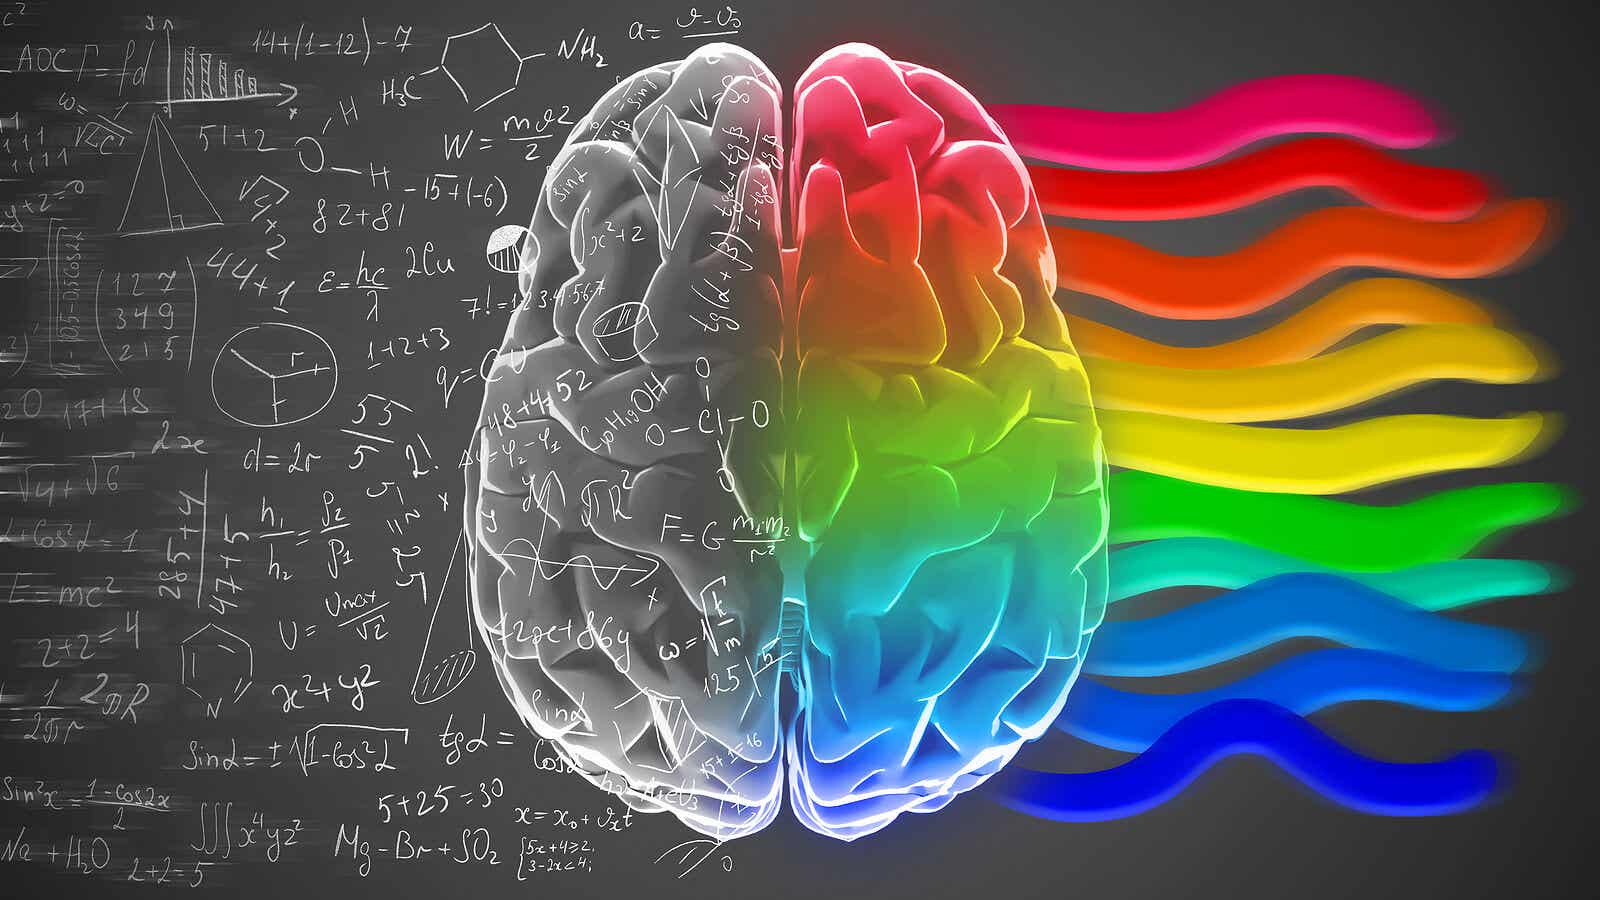 Hemisferios cerebrales y personalidad: ¿un mito?